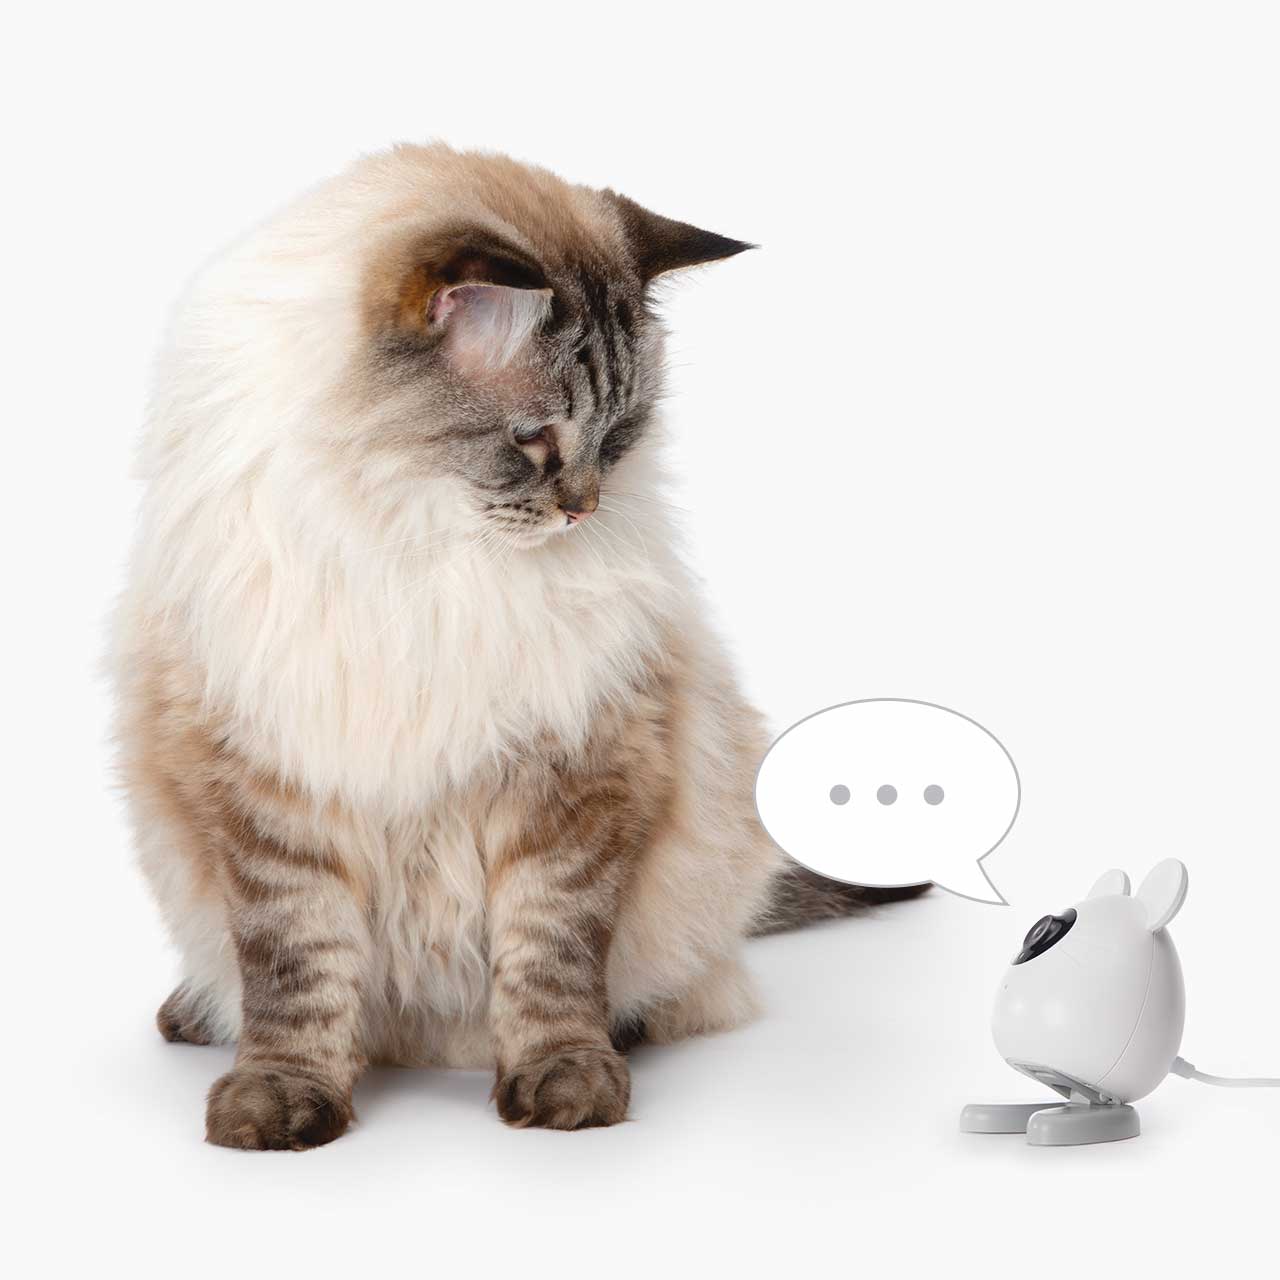 Audio bidirezionale – parla con il tuo gatto